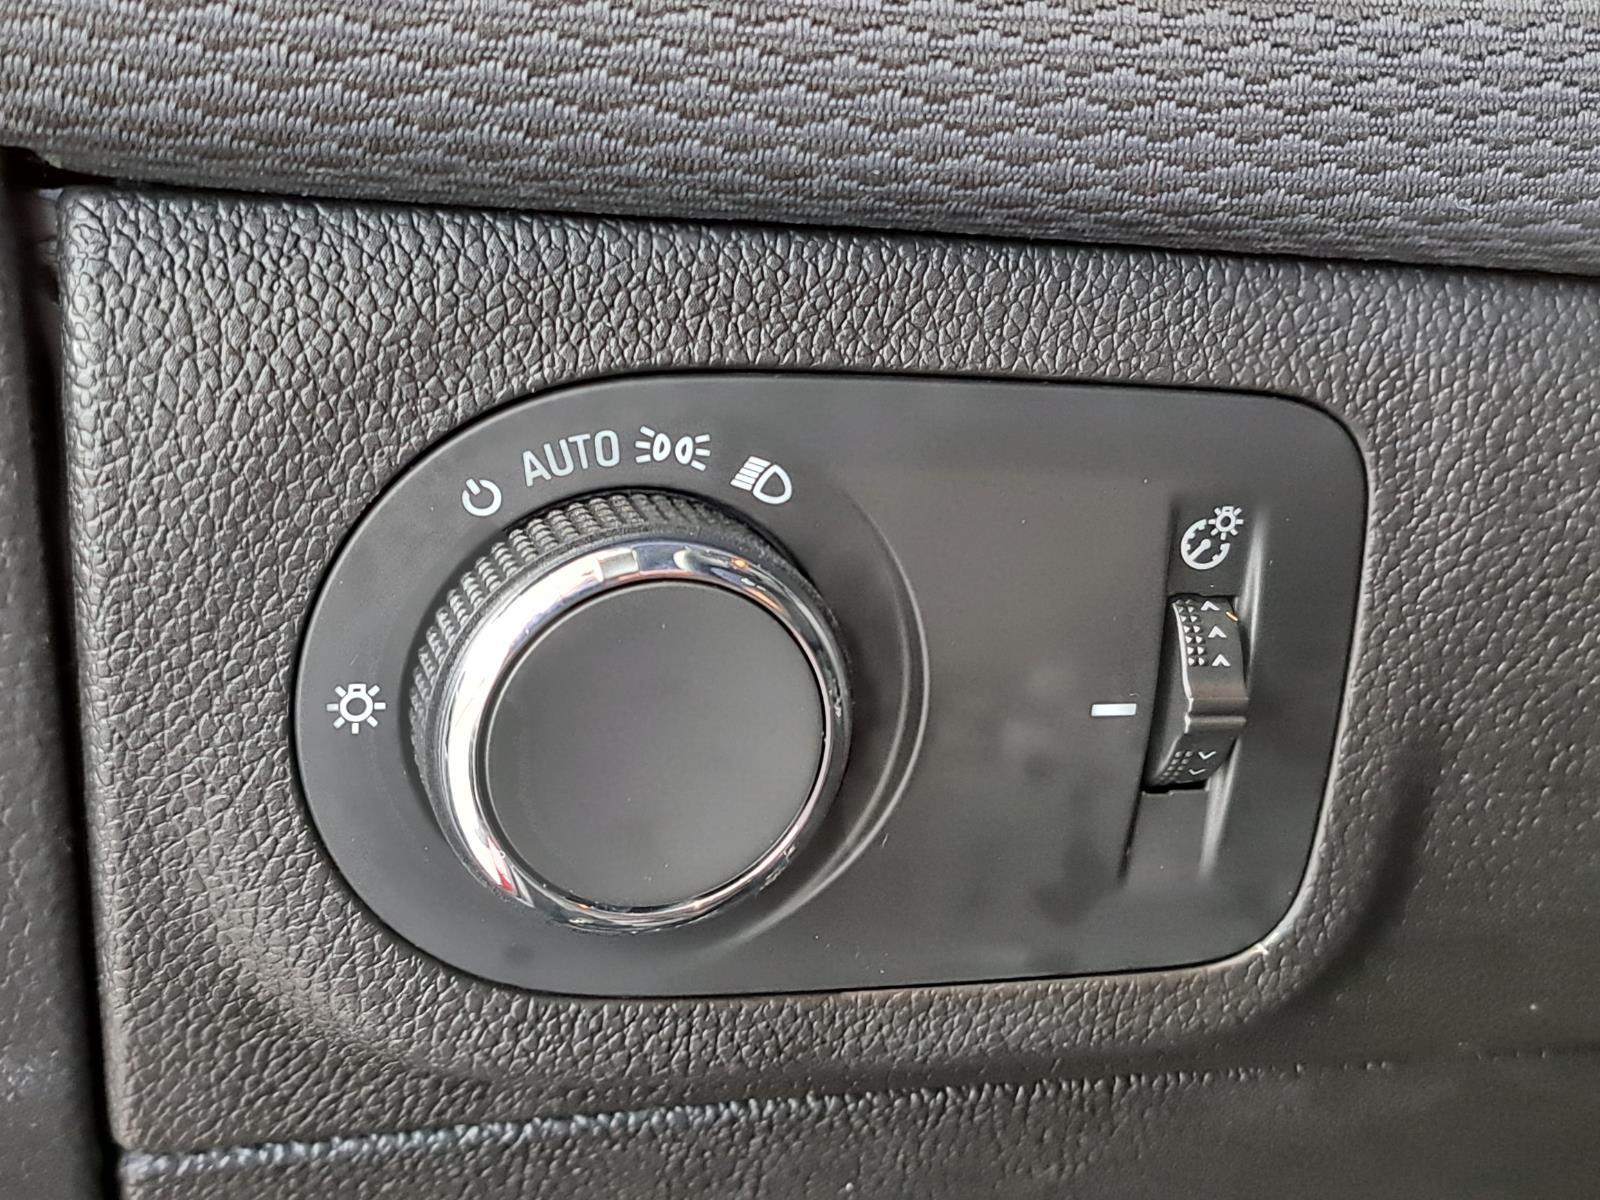 2019 Chevrolet Cruze LT Hatchback 4 Dr. Front Wheel Drive 15